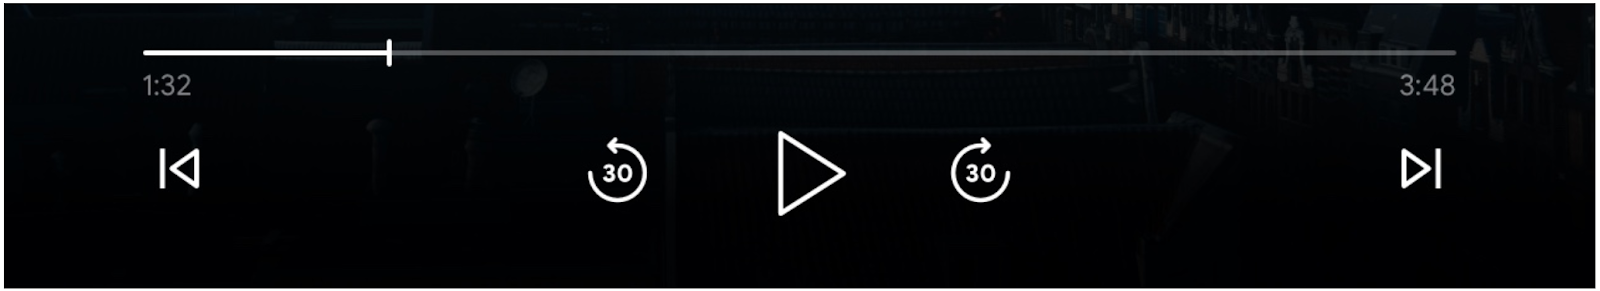 Imagen de los controles del reproductor multimedia: barra de progreso, el botón “Reproducir”, los botones “Saltar hacia adelante” y “Saltar hacia atrás”, y los botones “Fila anterior” y “Cola siguiente” habilitados